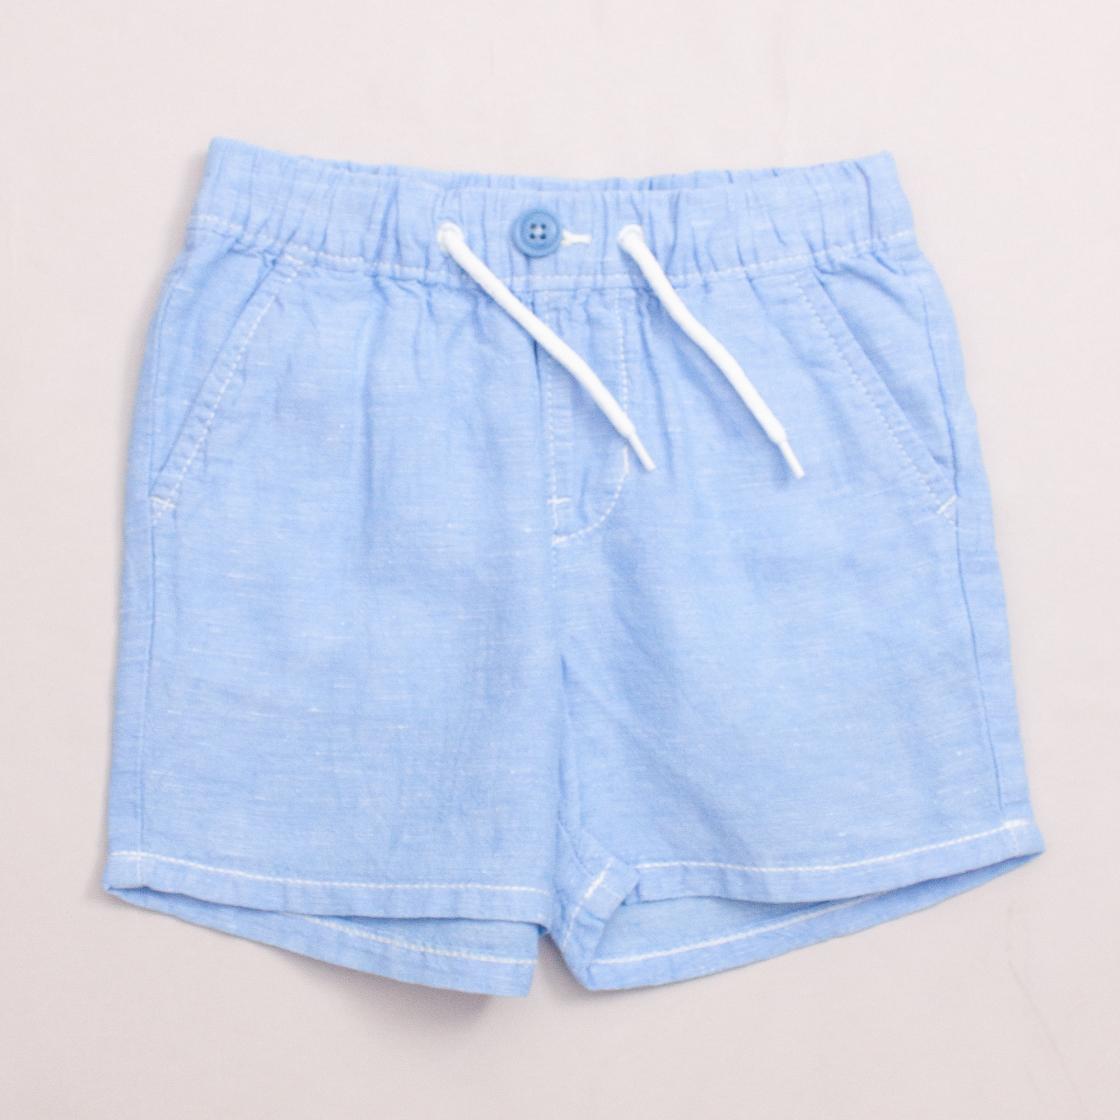 Gap Blue Shorts